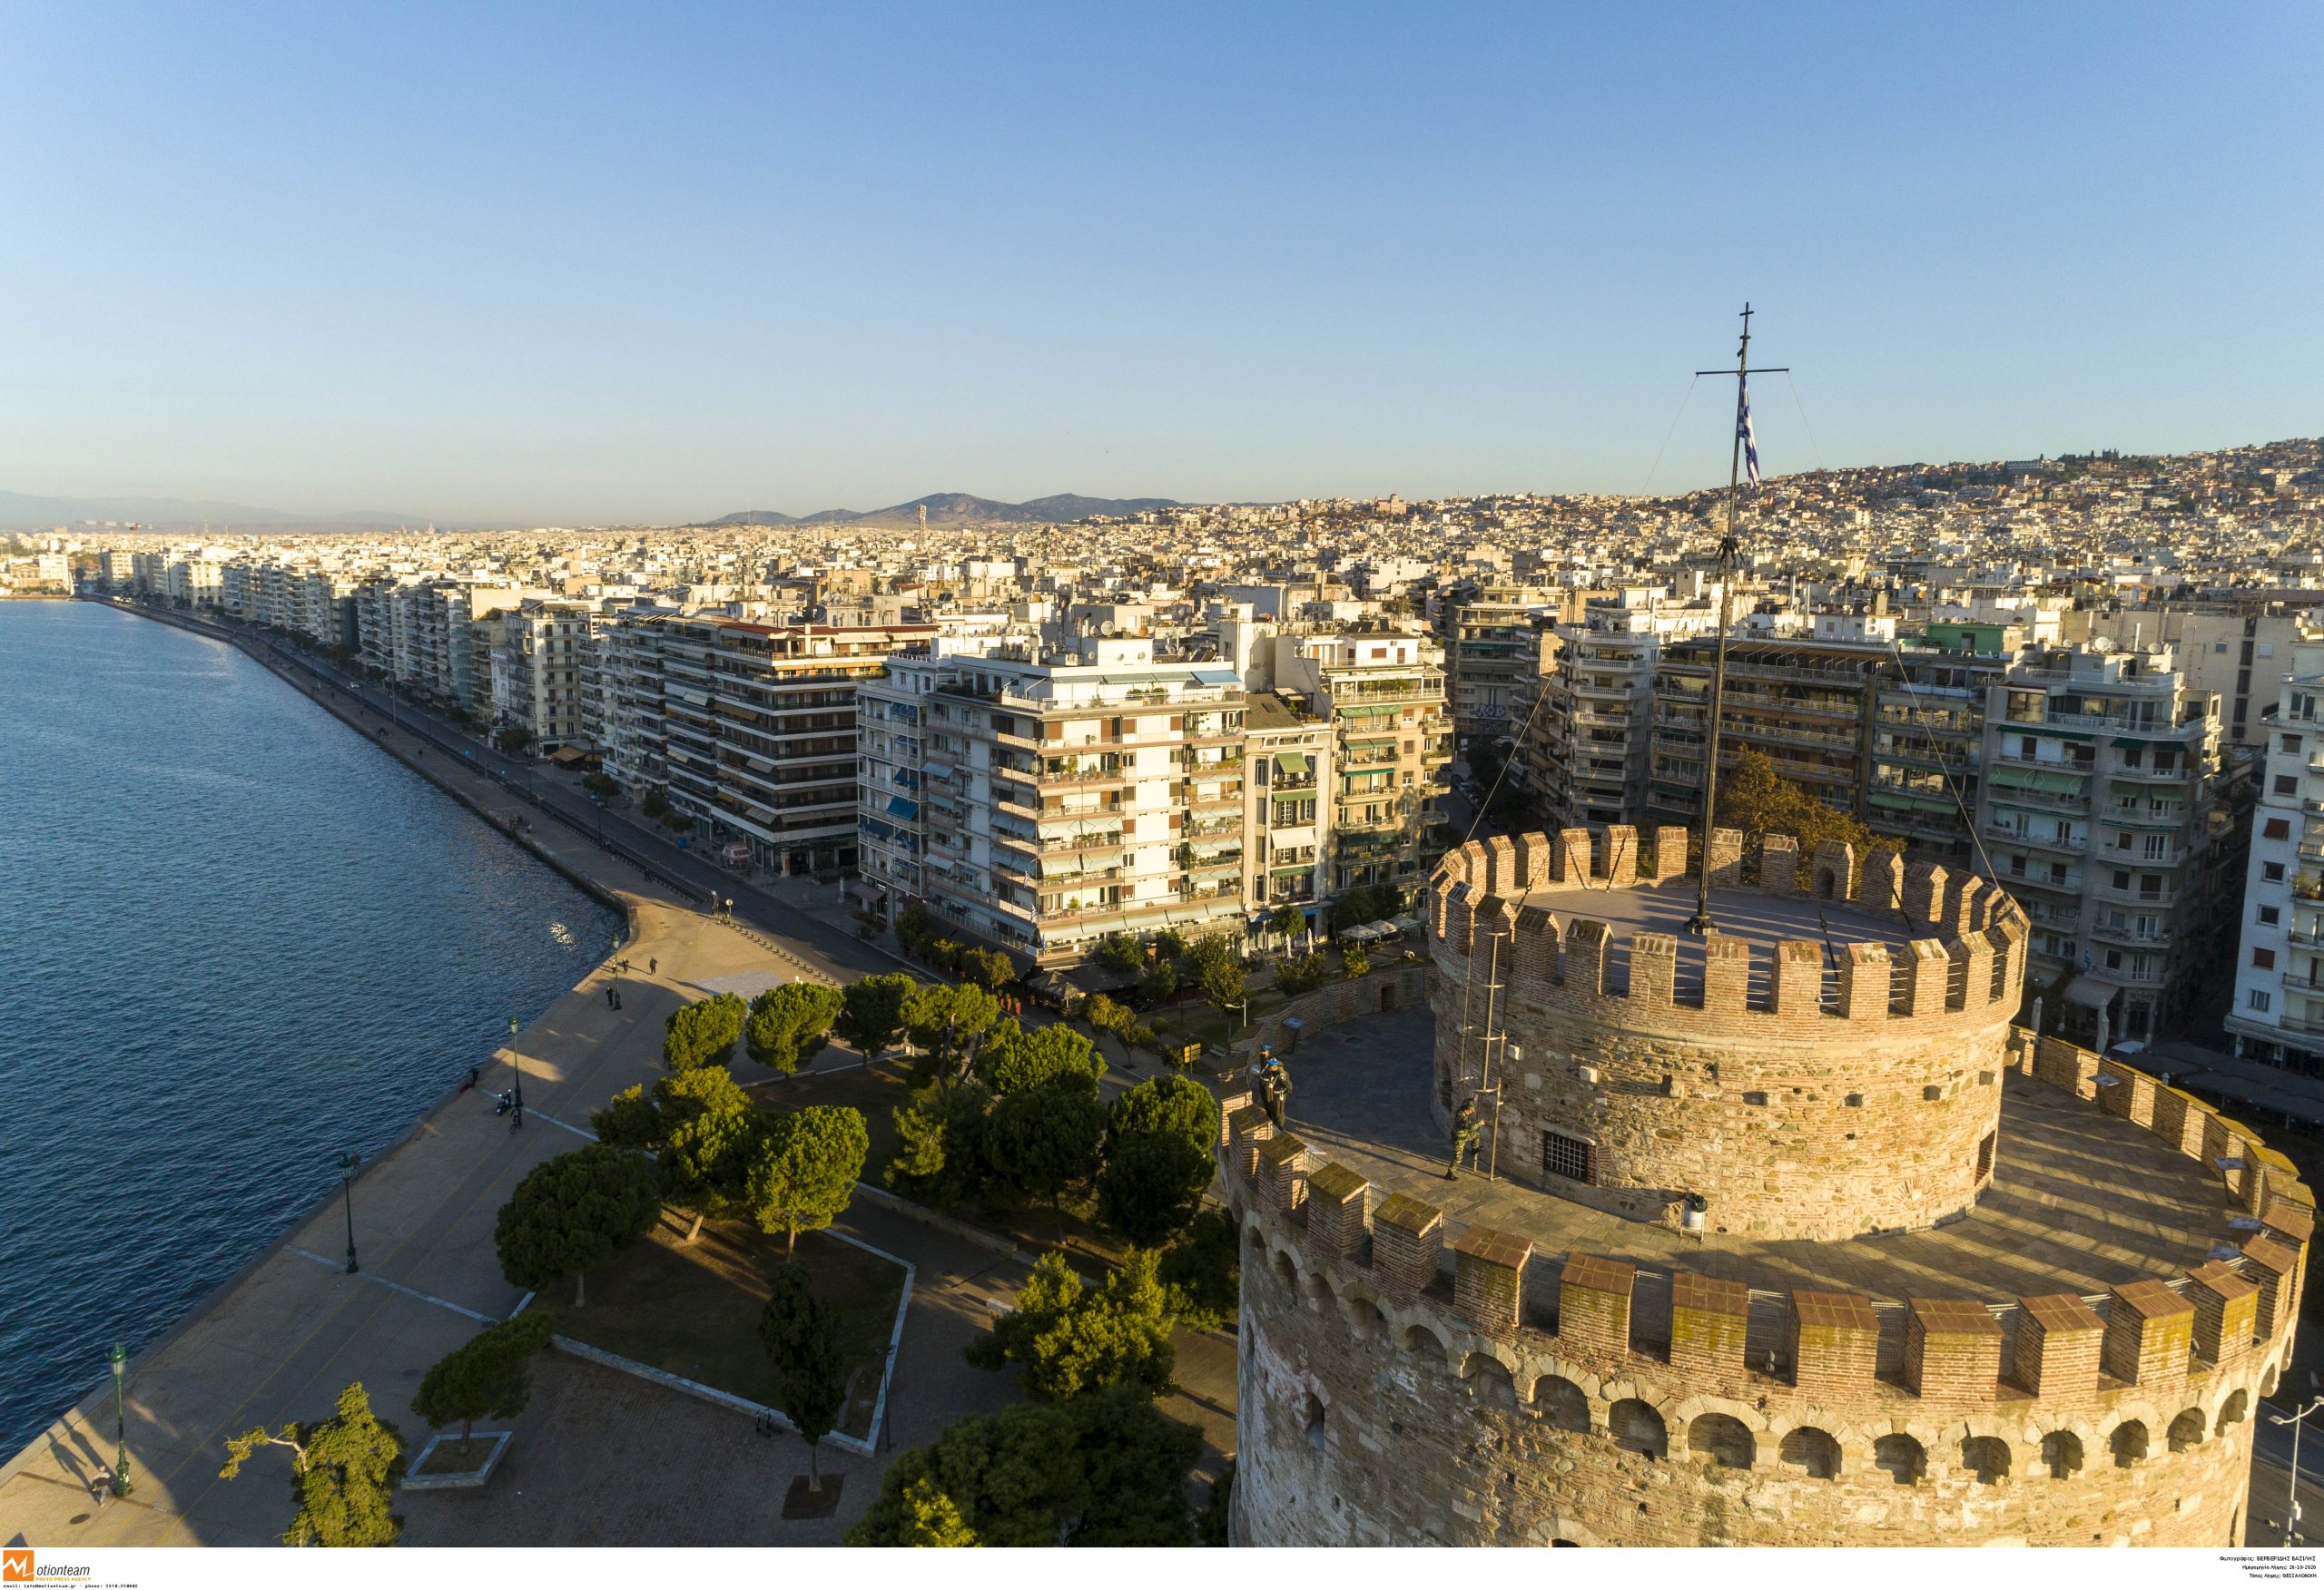 Θεσσαλονίκη – τουρισμός: Αυξήθηκαν διανυκτερεύσεις και κατανάλωση, λέει ο δήμαρχος Κ. Ζέρβας